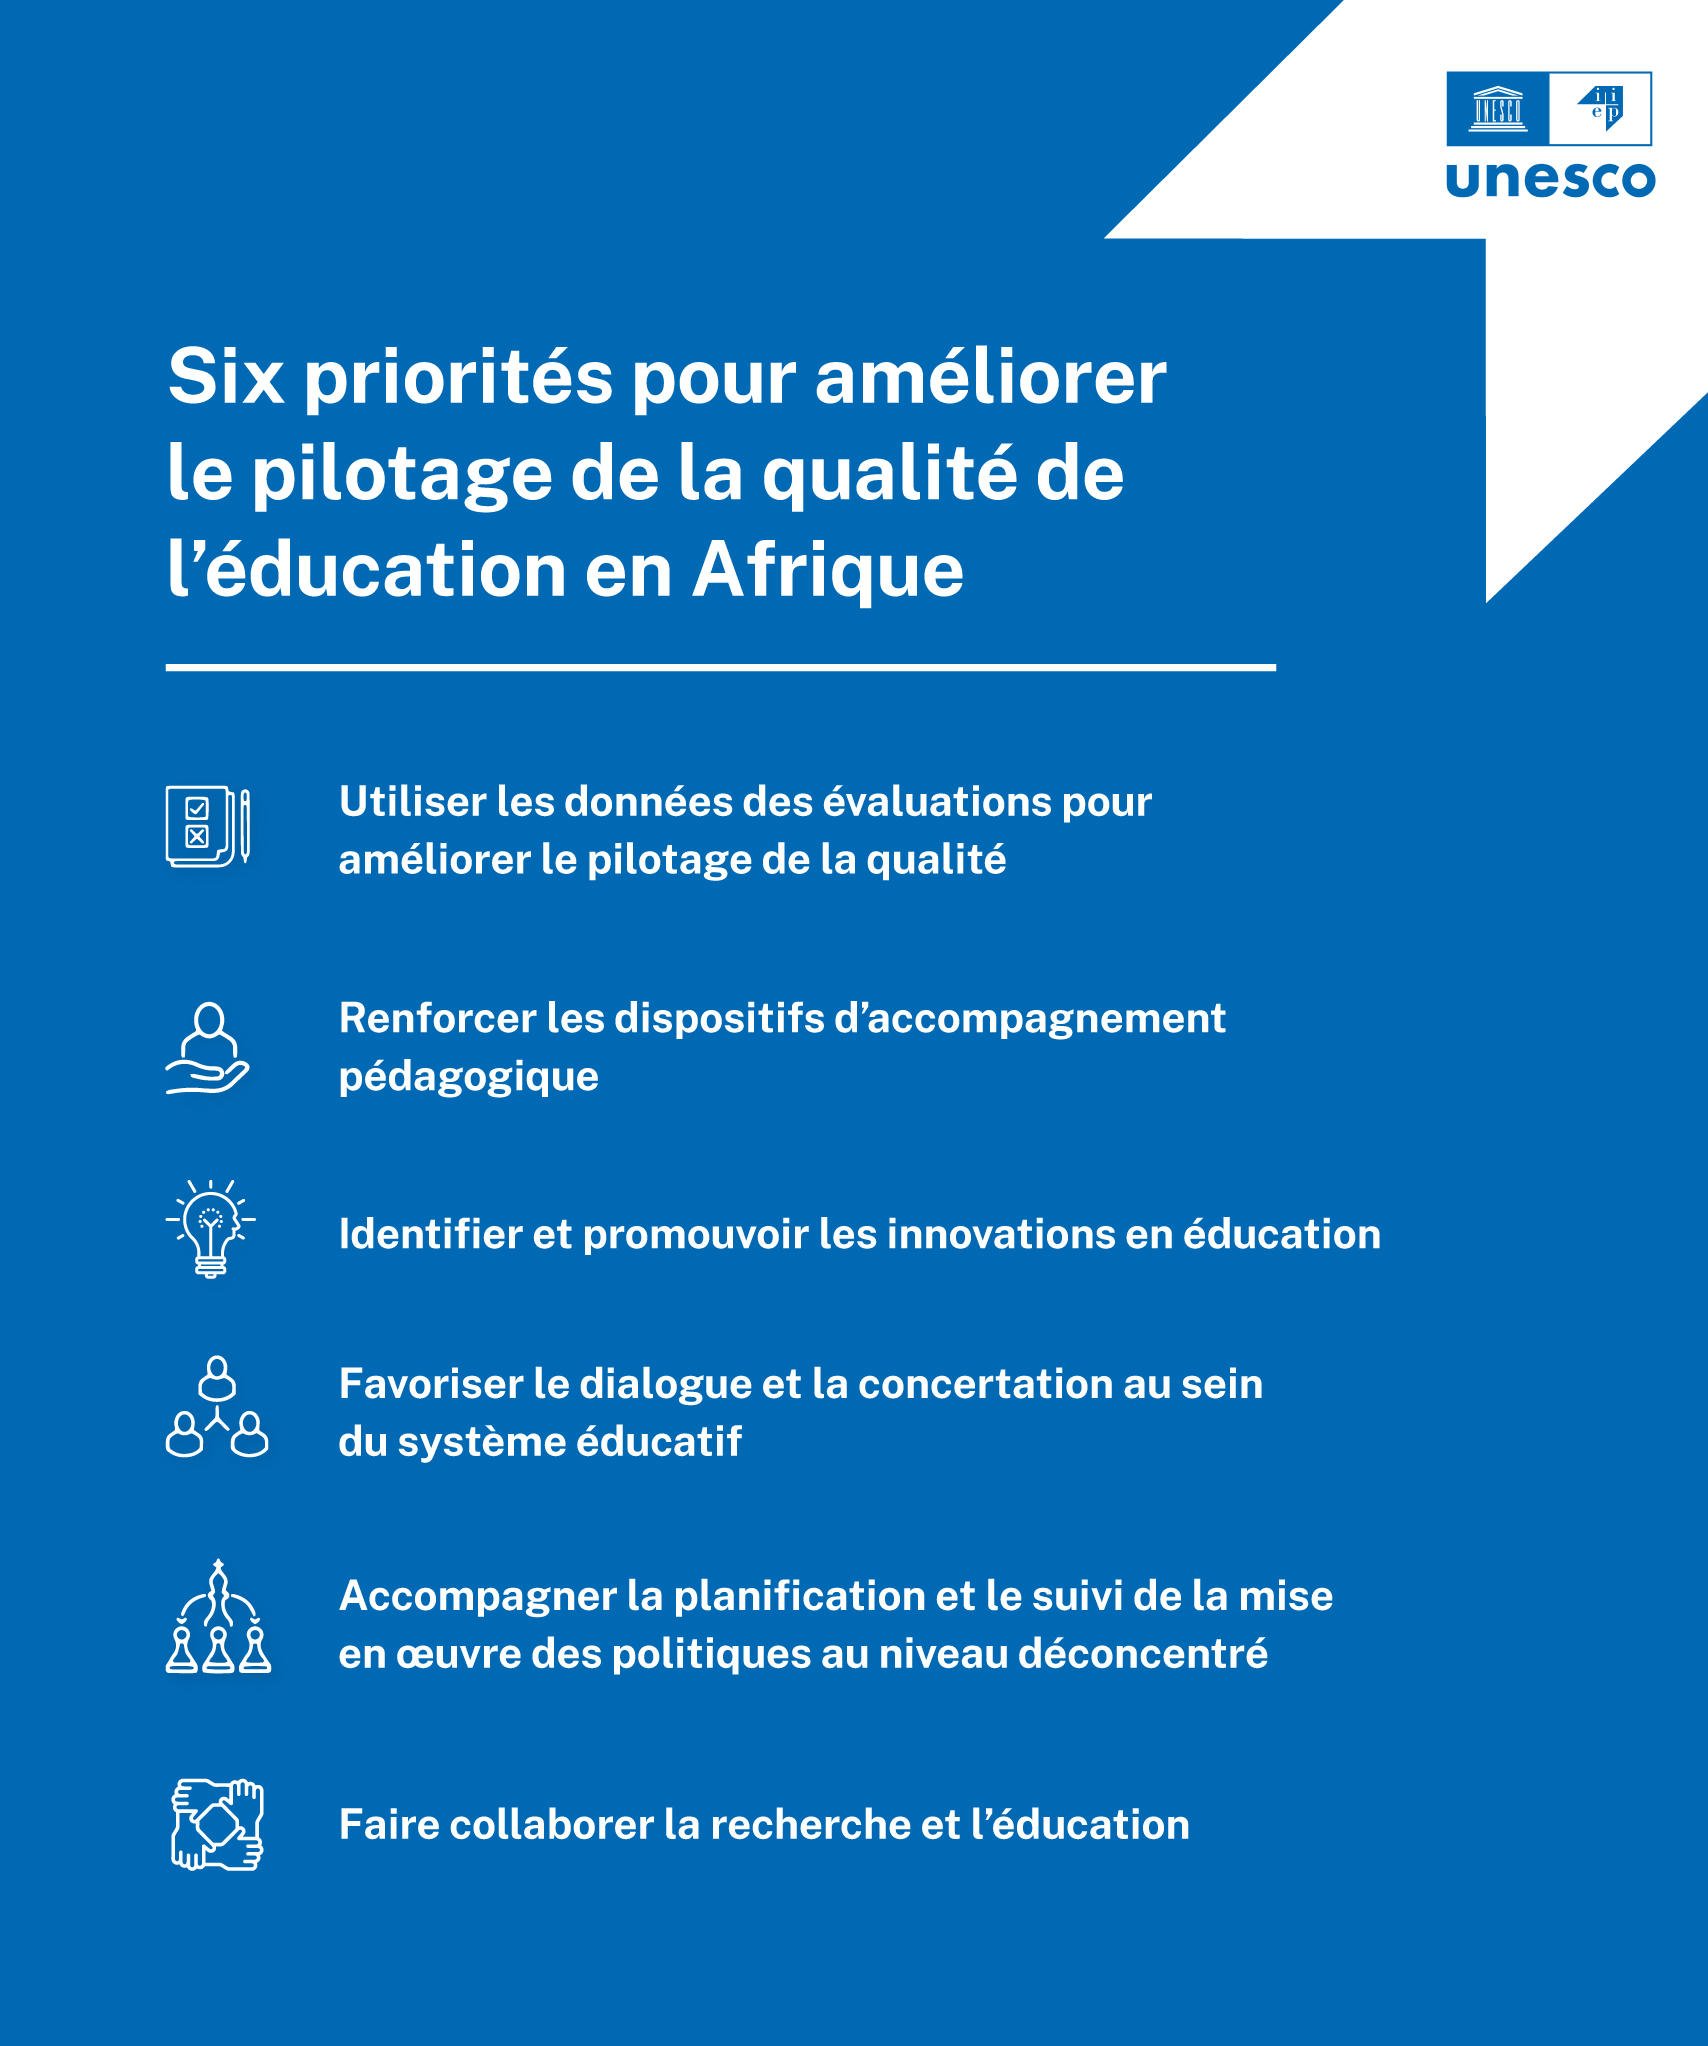 Six priorites qualite education